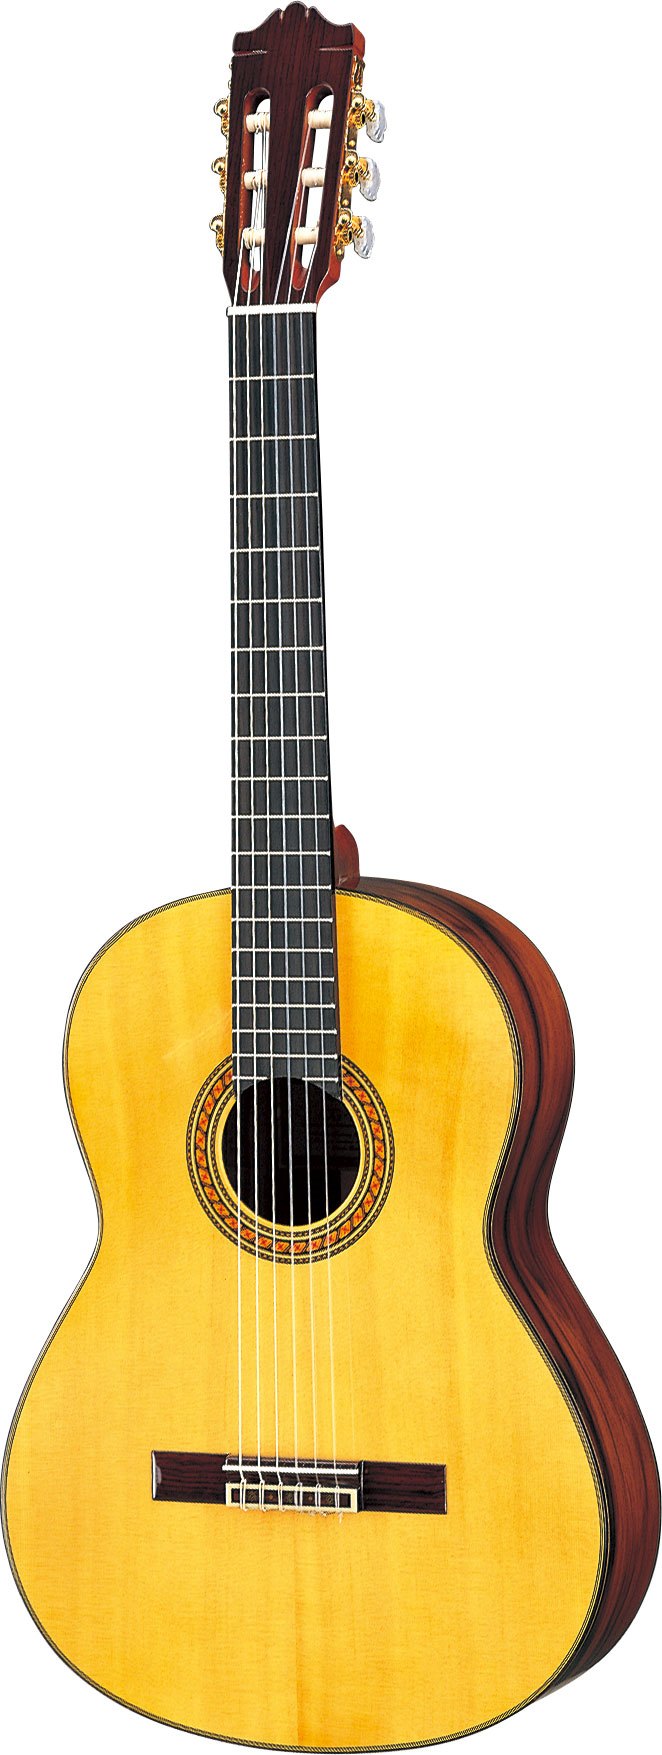 ヤマハ | CG151S - クラシックギター・ナイロン弦ギター - 概要